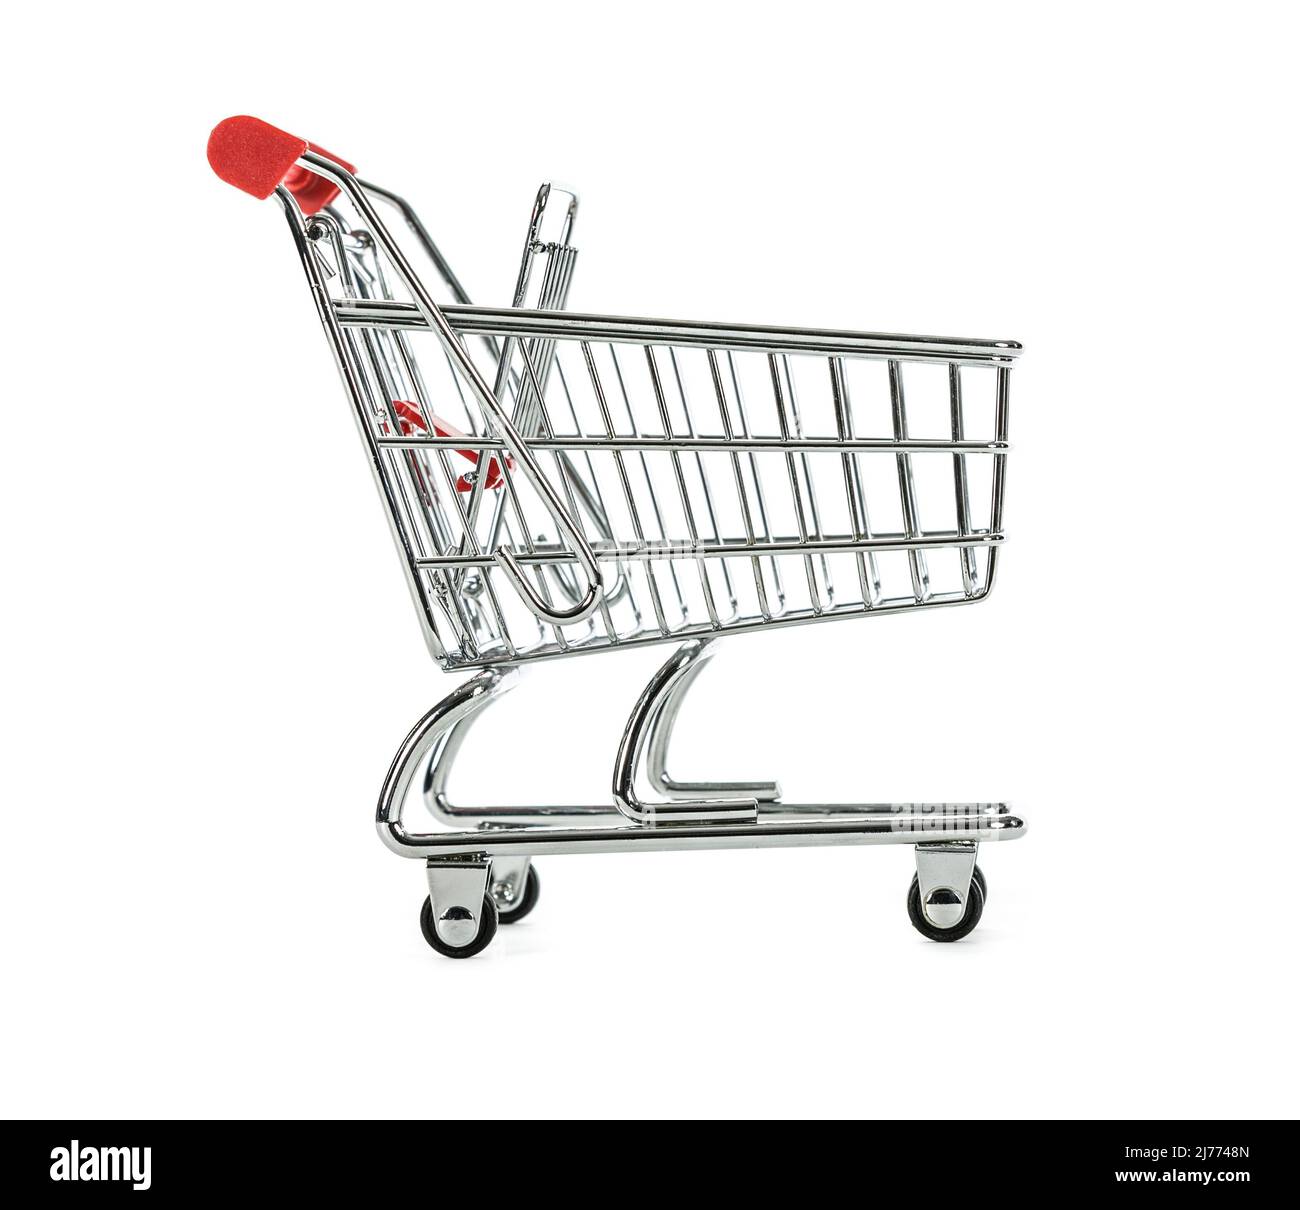 Mini-Chrom-Einkaufswagen-Trolley-Korb isoliert auf einem weißen Hintergrund, fotografiert Seite an. Stockfoto